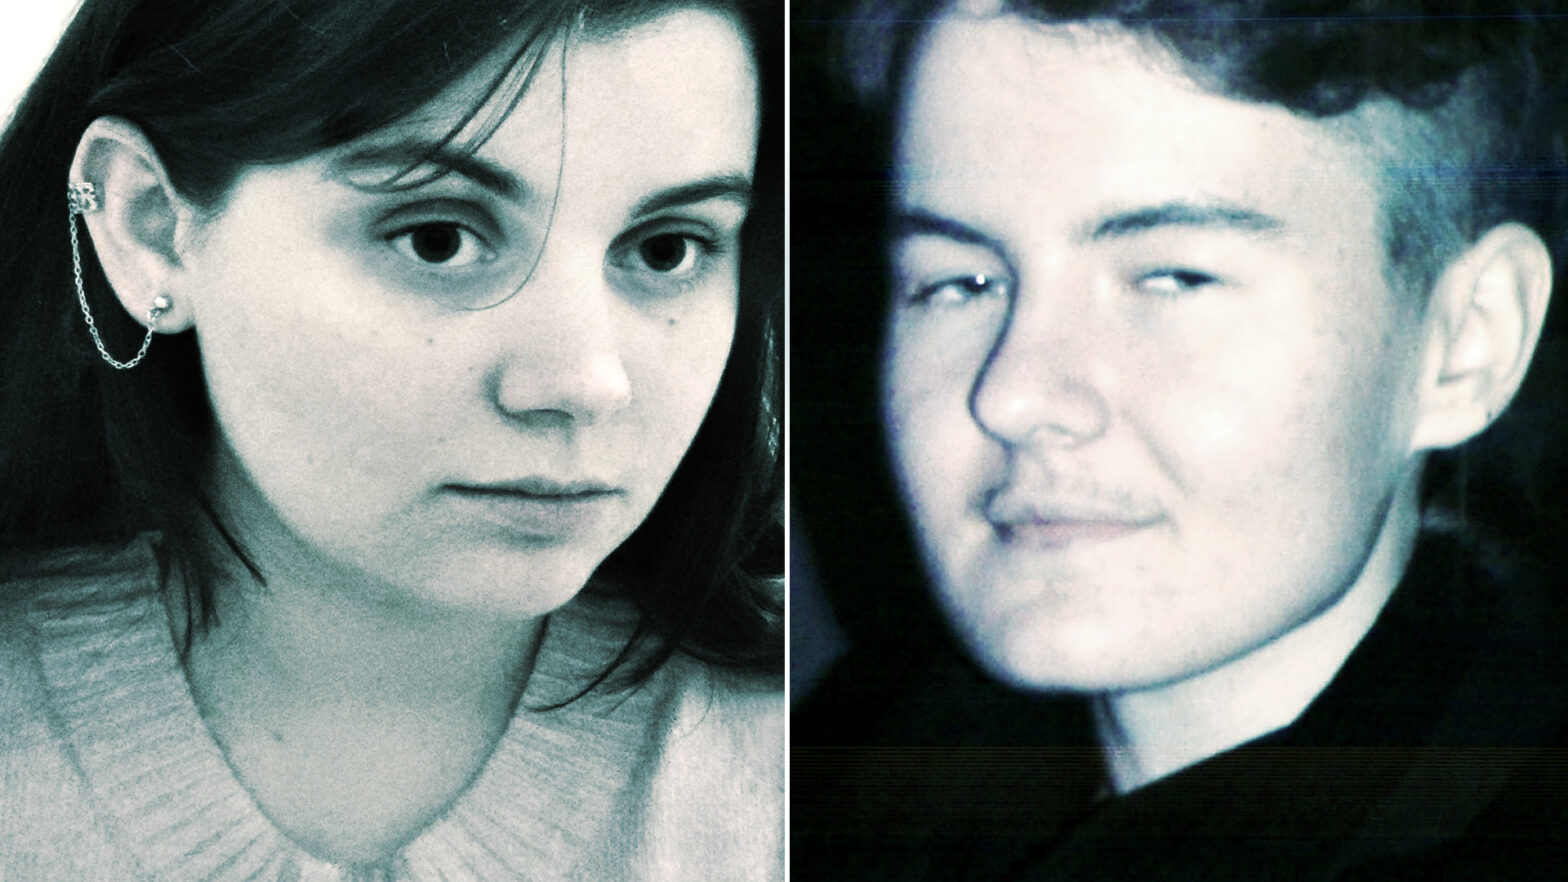 ALT: Czarno-białe portrety Julii Sieczkowskiej i Marcela Boguszewskiego. Kobieta po lewej stronie ujęta jest z prawego półprofilu, mężczyzna po prawej z lewego półprofilu. Oboje spoglądają w przestrzeń i są lekko uśmiechnięci.